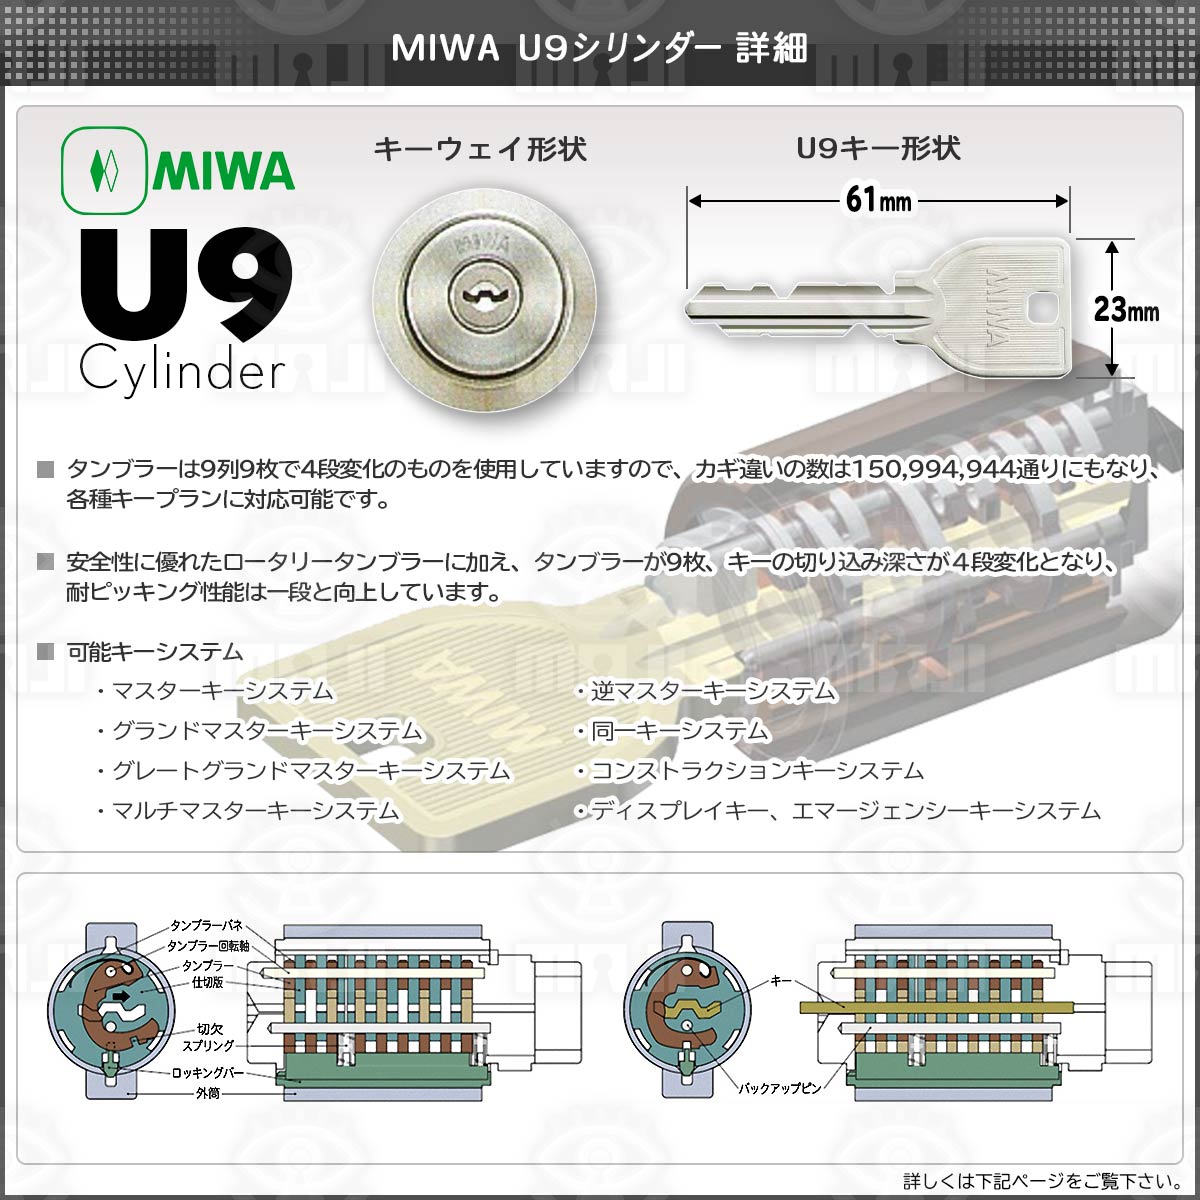 ドアハンドル・錠前・カギ ゴールV-MDU-5面付補助錠 ステン色 純正4本キー付 - 2